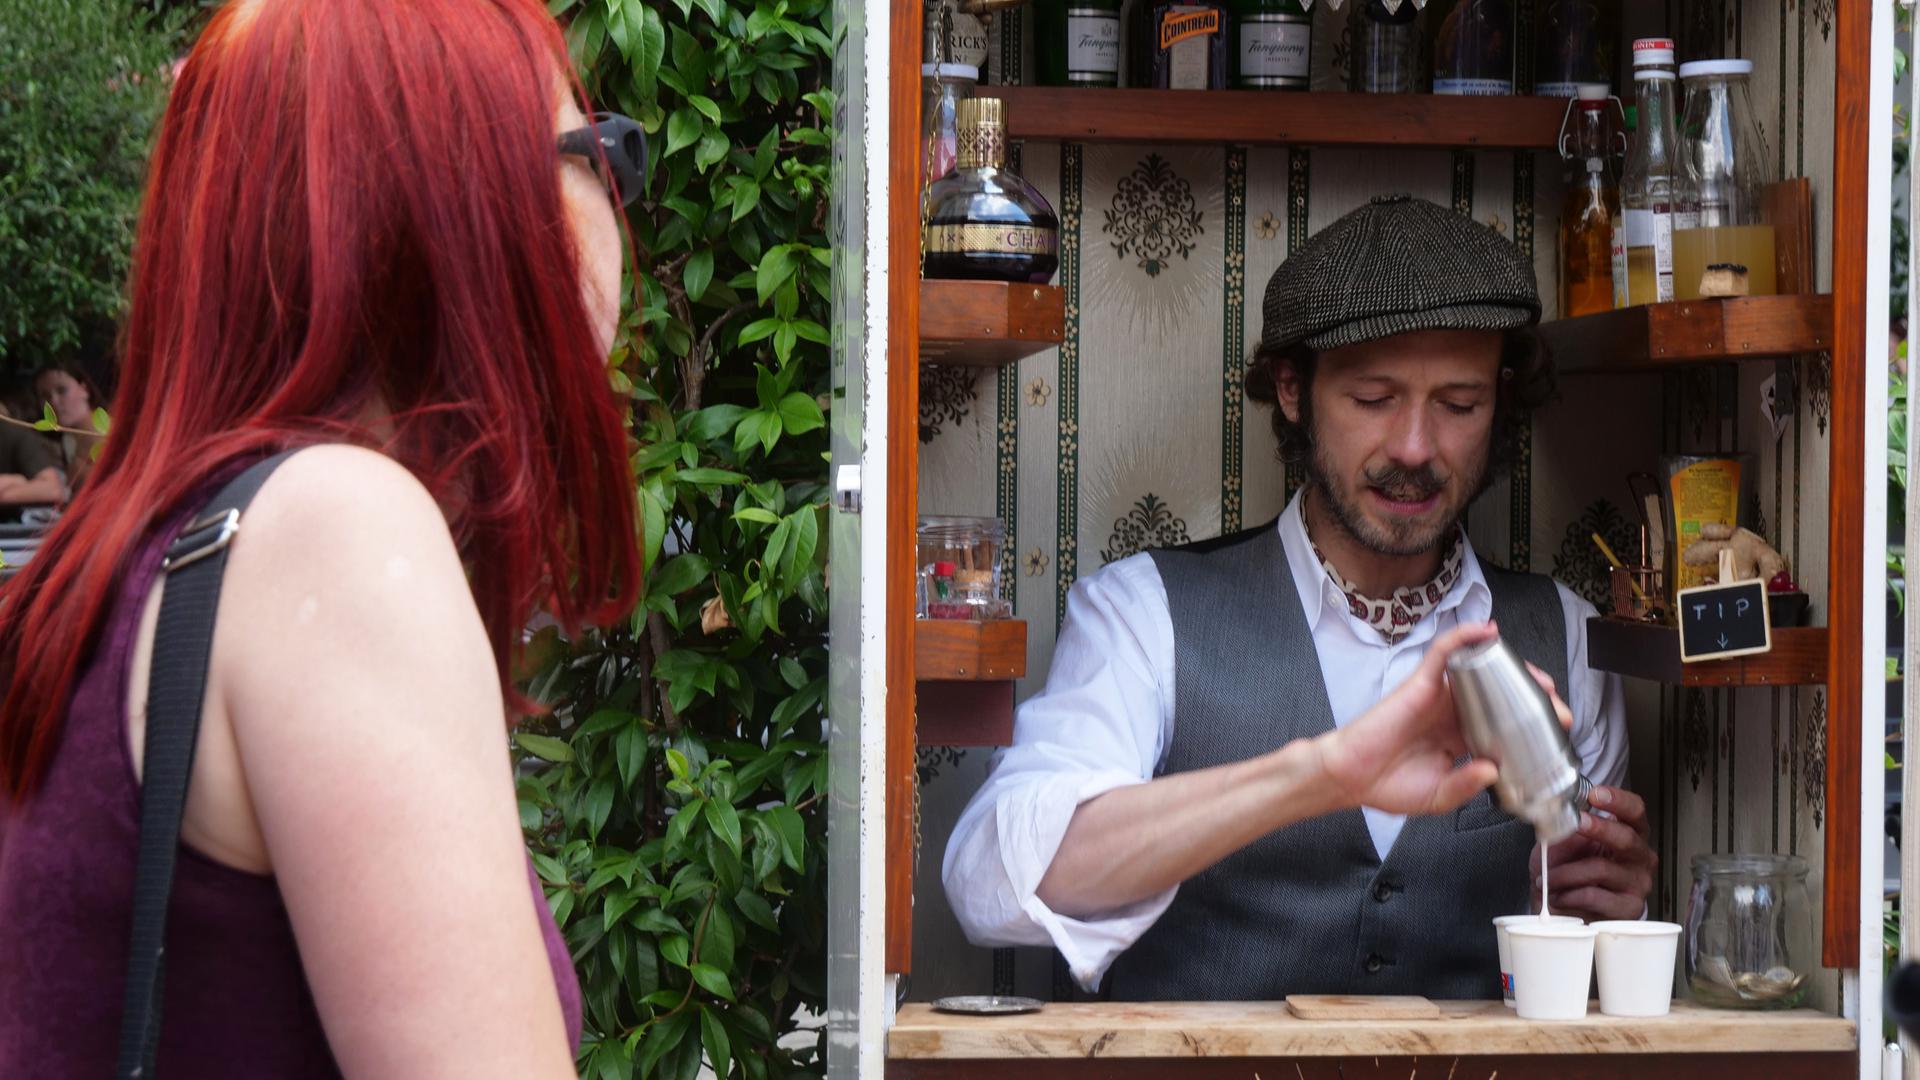 Patrick Folkerts mischte auf dem Marktplatz Drinks im Inneren eines Kühlschranks - der kleinste Tresen der Welt besetzt mit einem Barkeeper